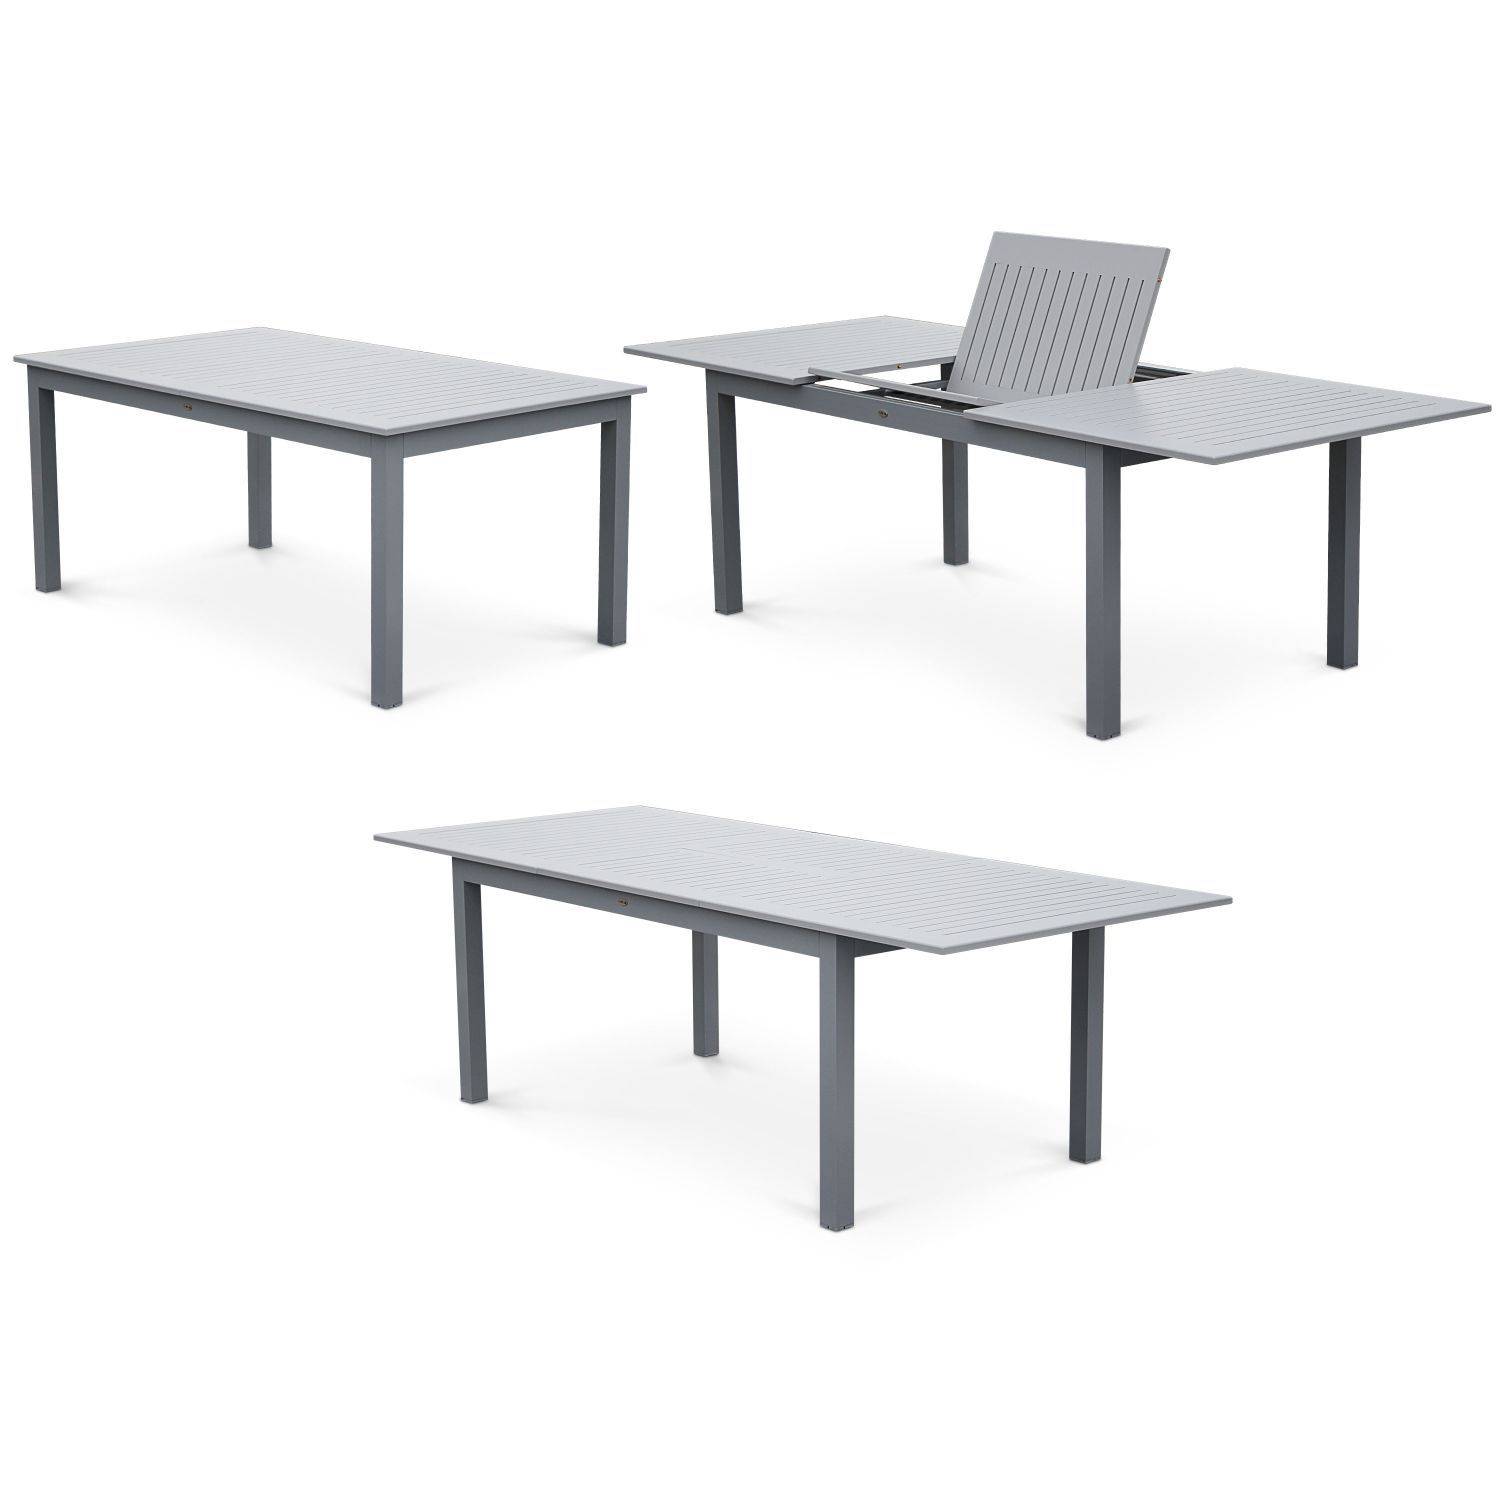 Set da giardino con tavolo allungabile - modello: Chicago, colore: Grigio - Tavolo in alluminio, dimensioni: 175/245cm con prolunga e 8 sedute in textilene Photo4